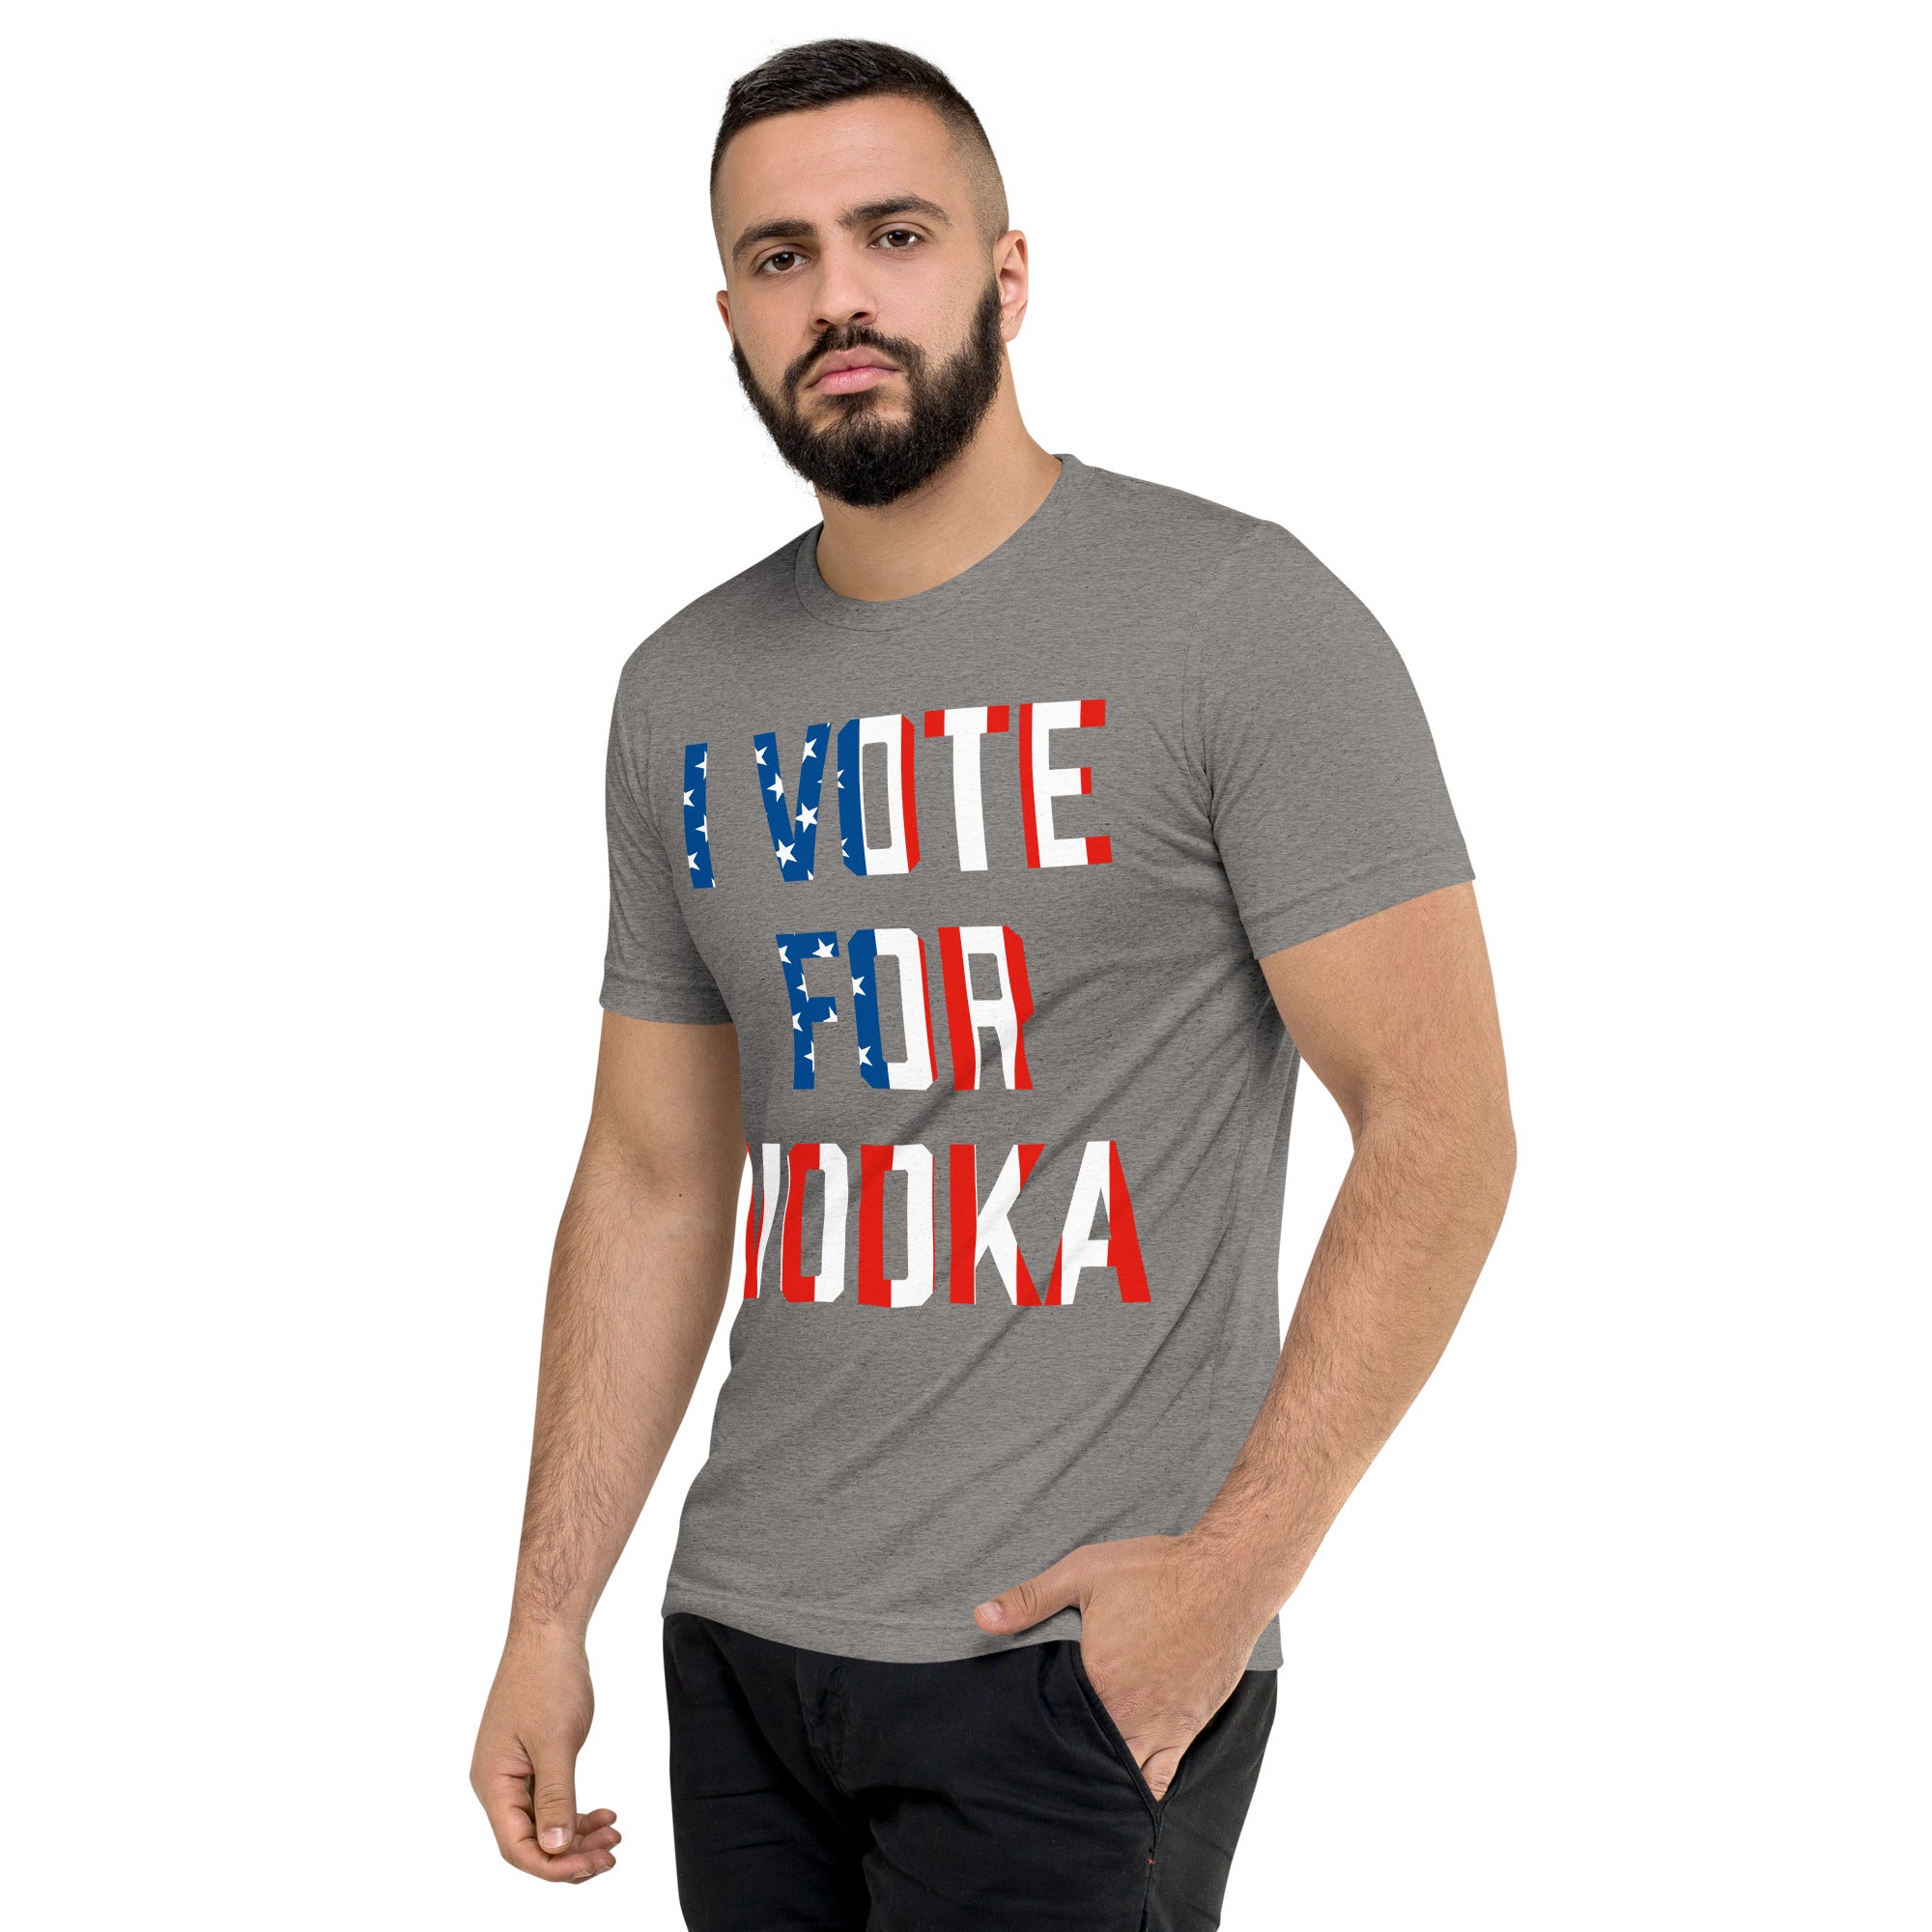 I Vote For Vodka Unisex Tri-Blend Track Shirt